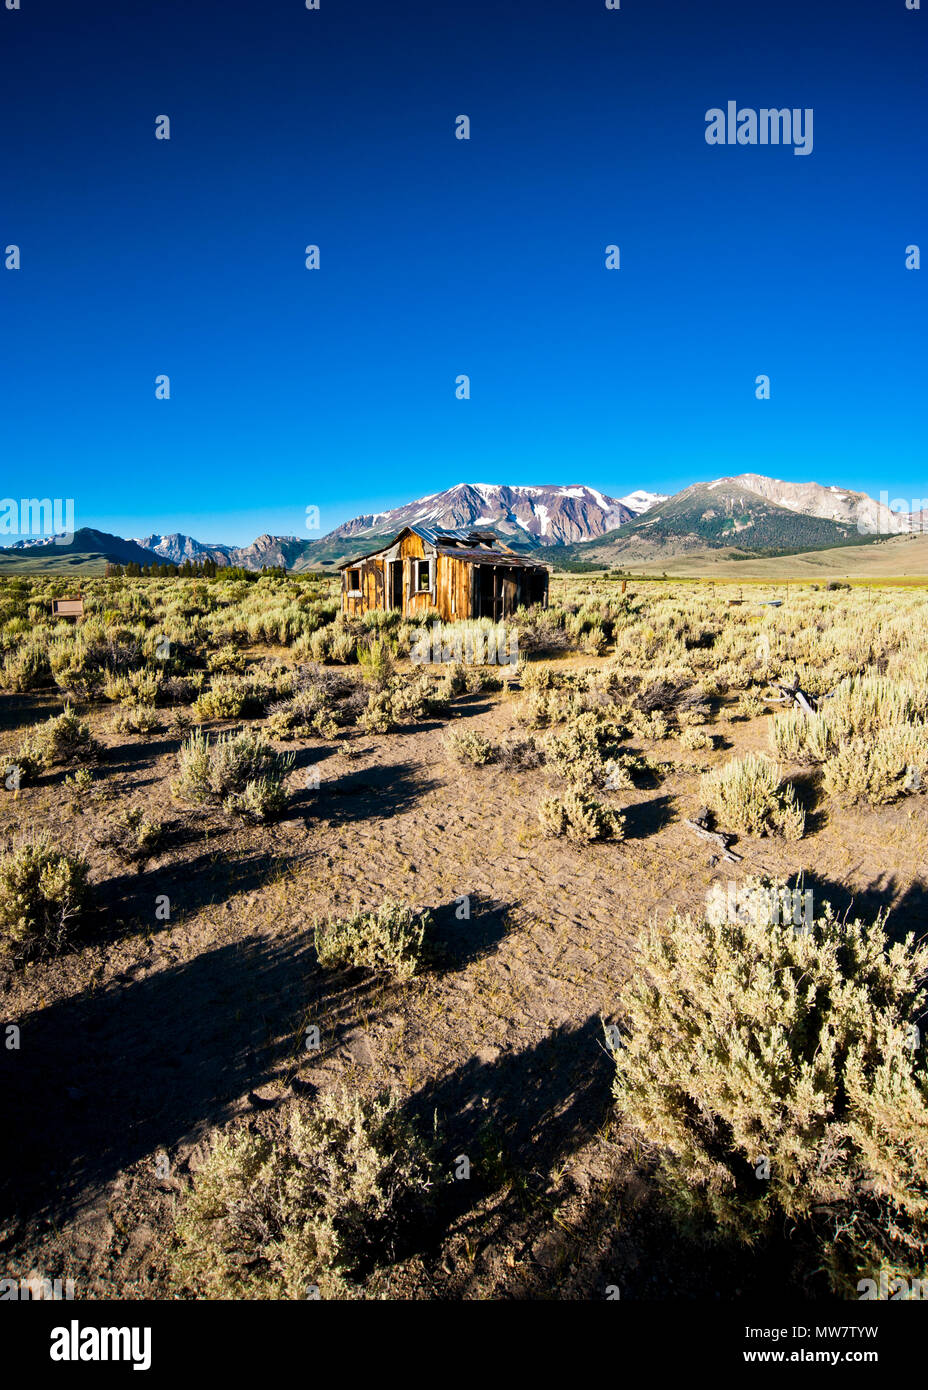 image grand angle de la maison abandonnée située sur le désert de la sierra haute nature sauvage, haute sierra neige a couvert des montagnes en arrière-plan, ciel bleu clair, Banque D'Images